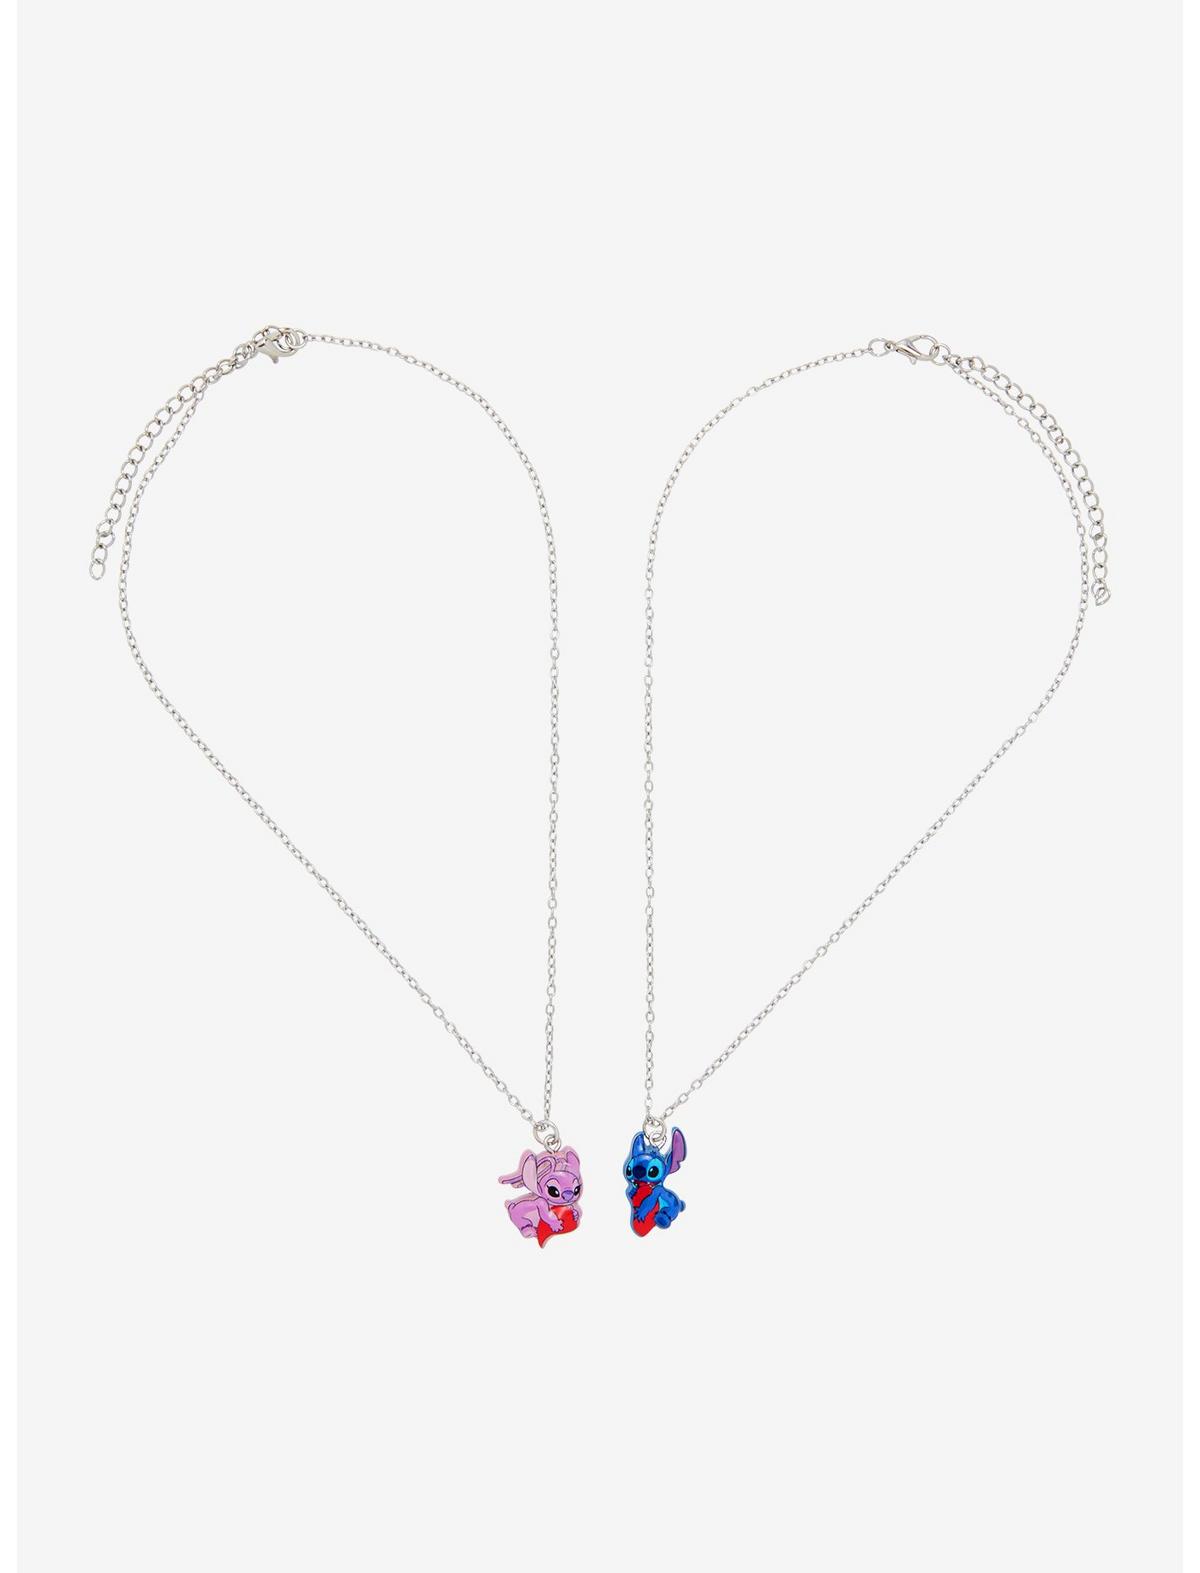 Disney Stitch & Angel Heart Best Friend Necklace Set